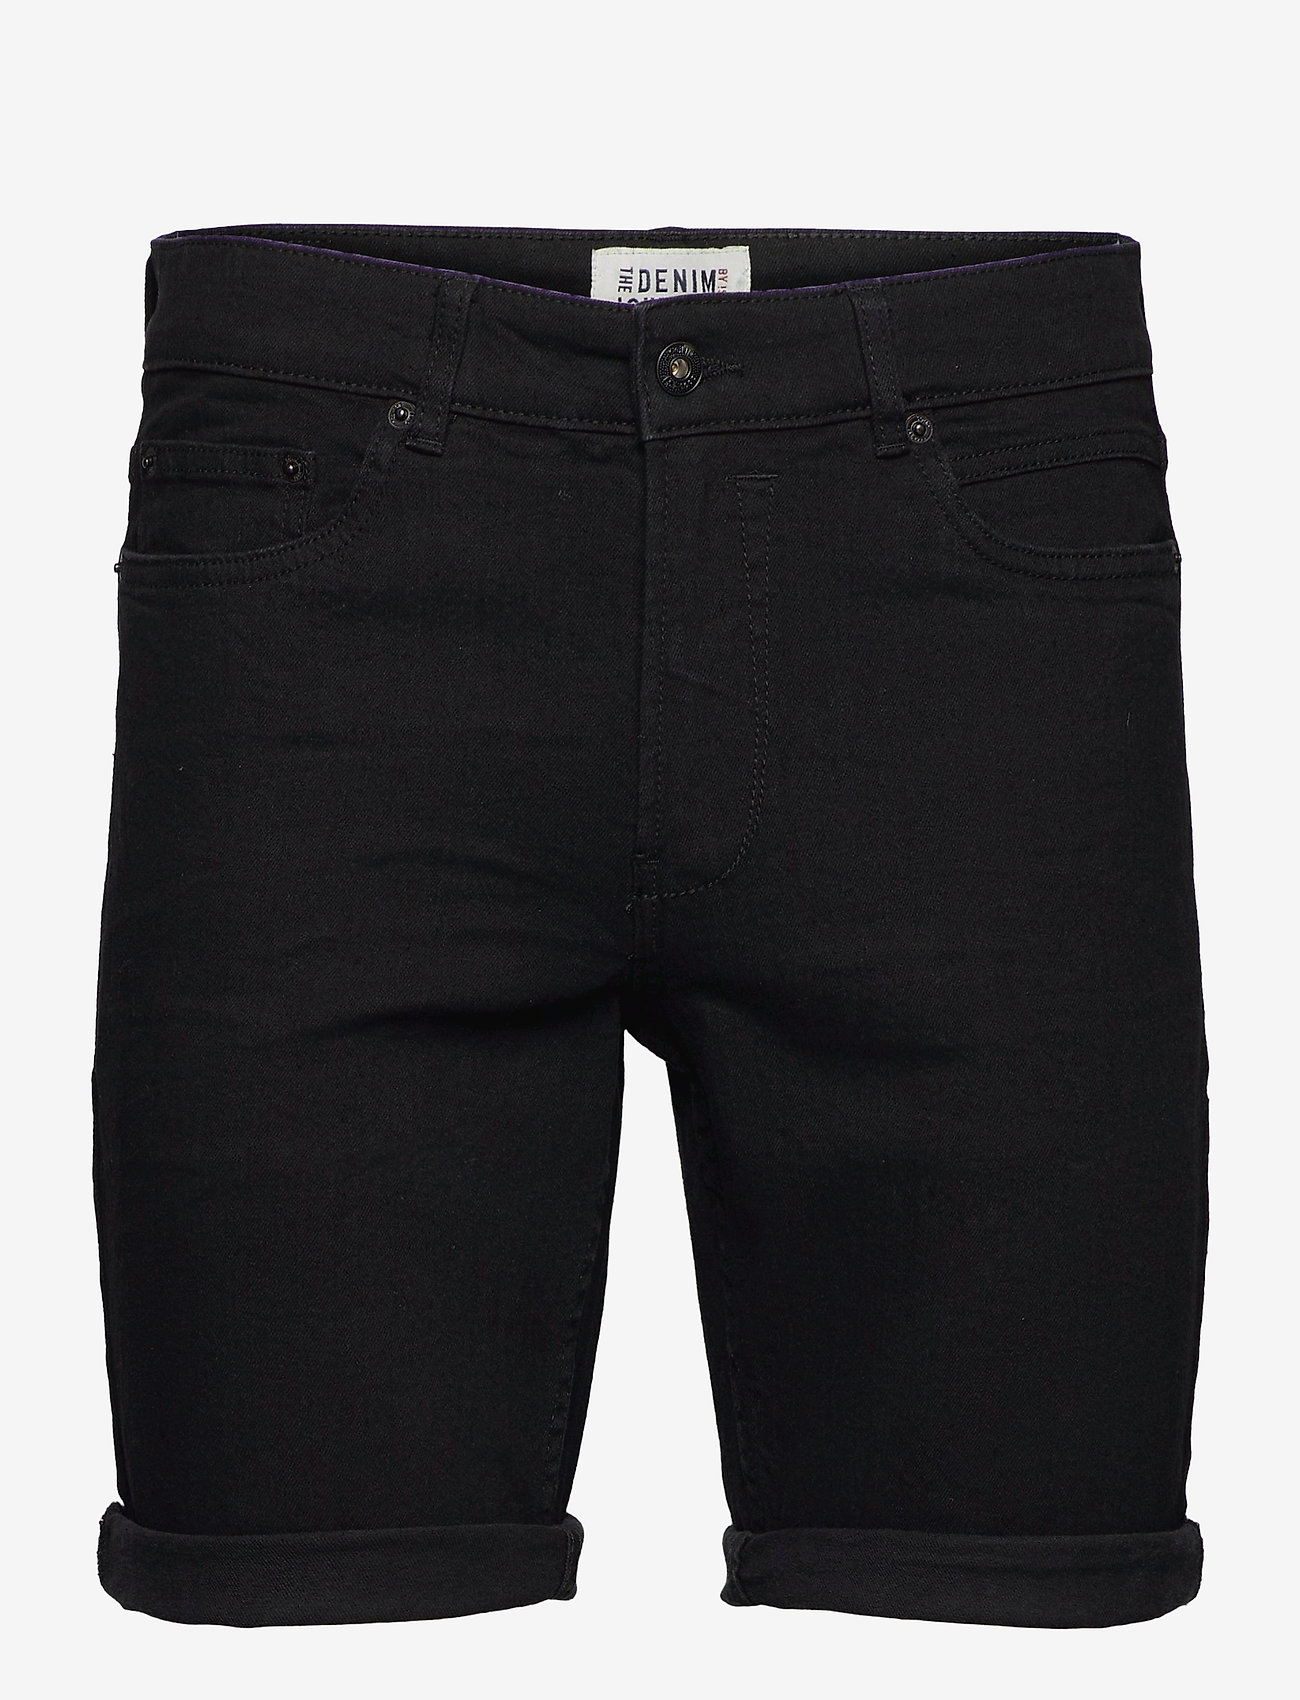 Solid - SDRyder Lt Black 100 - denim shorts - black denim - 0